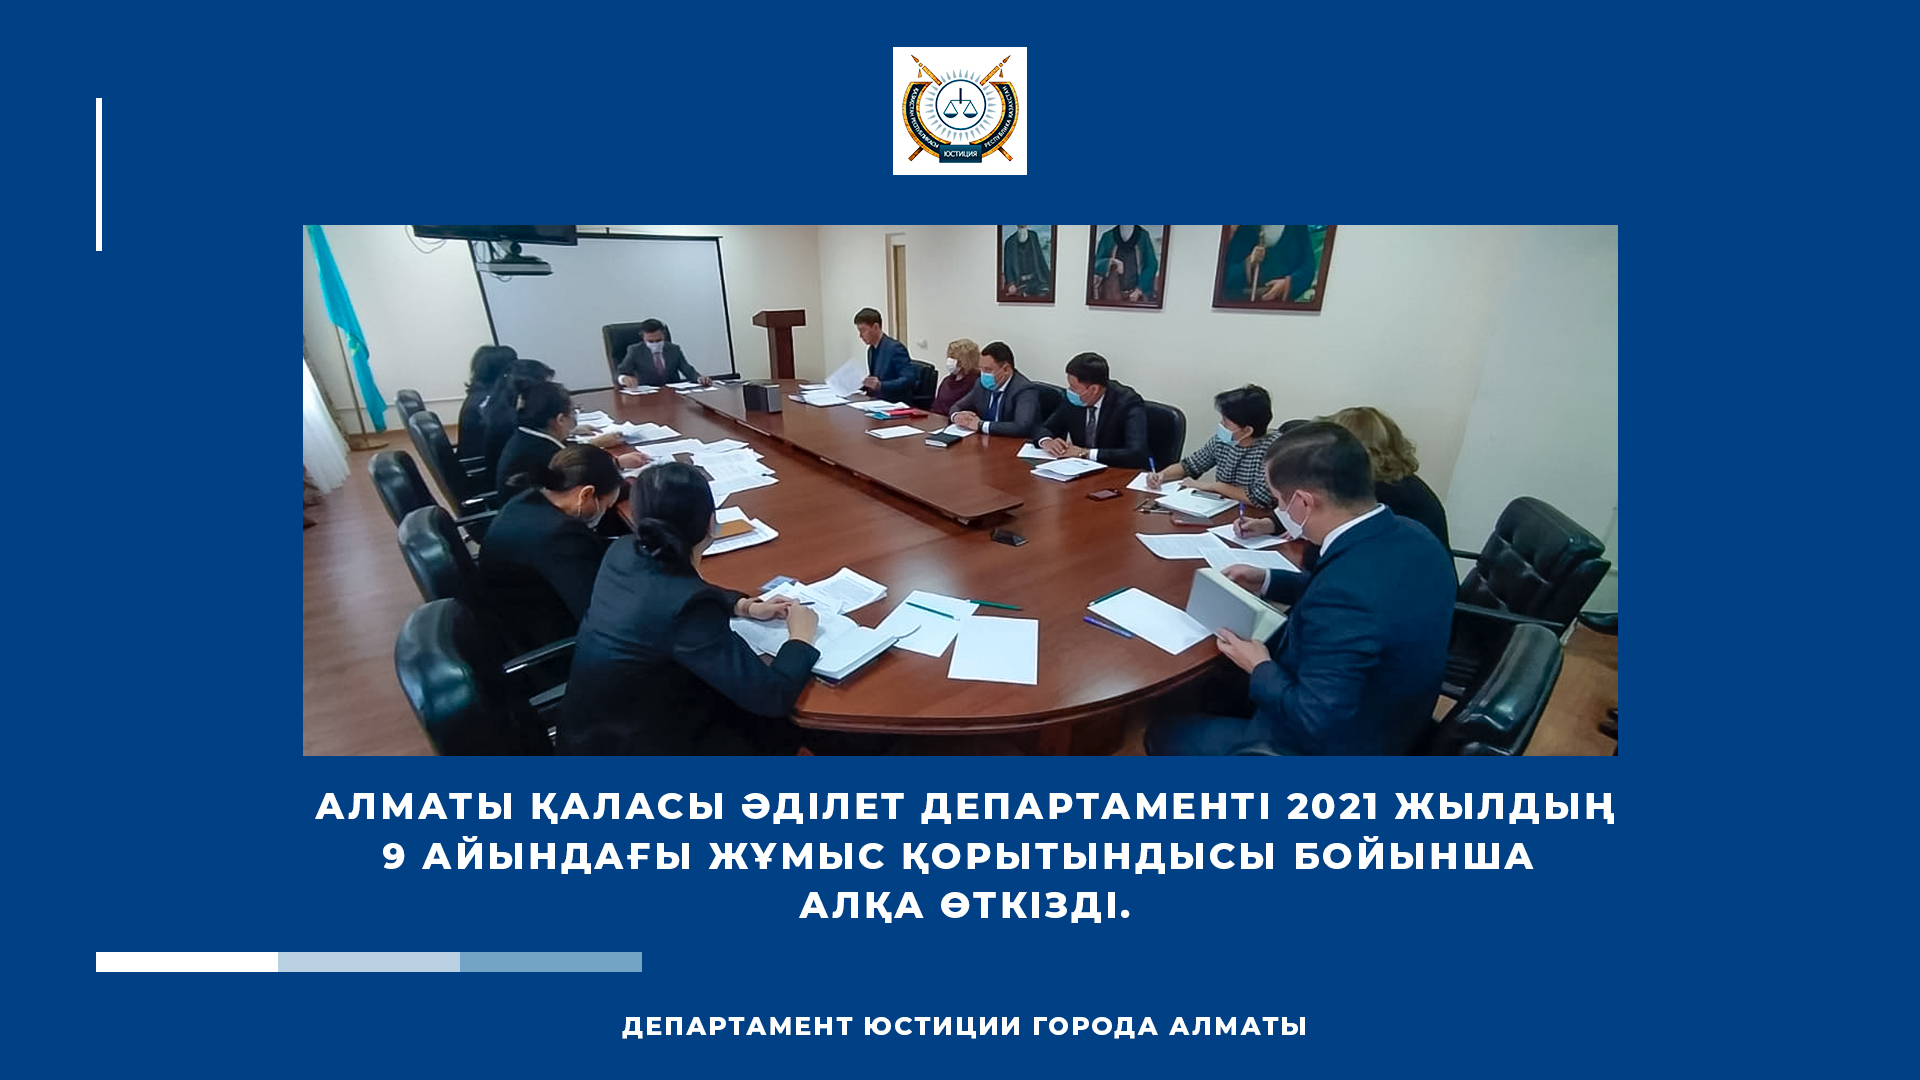 Алматы қаласы Әділет департаменті 2021 жылдың 9 айындағы жұмыс қорытындысы бойынша алқа өткізді